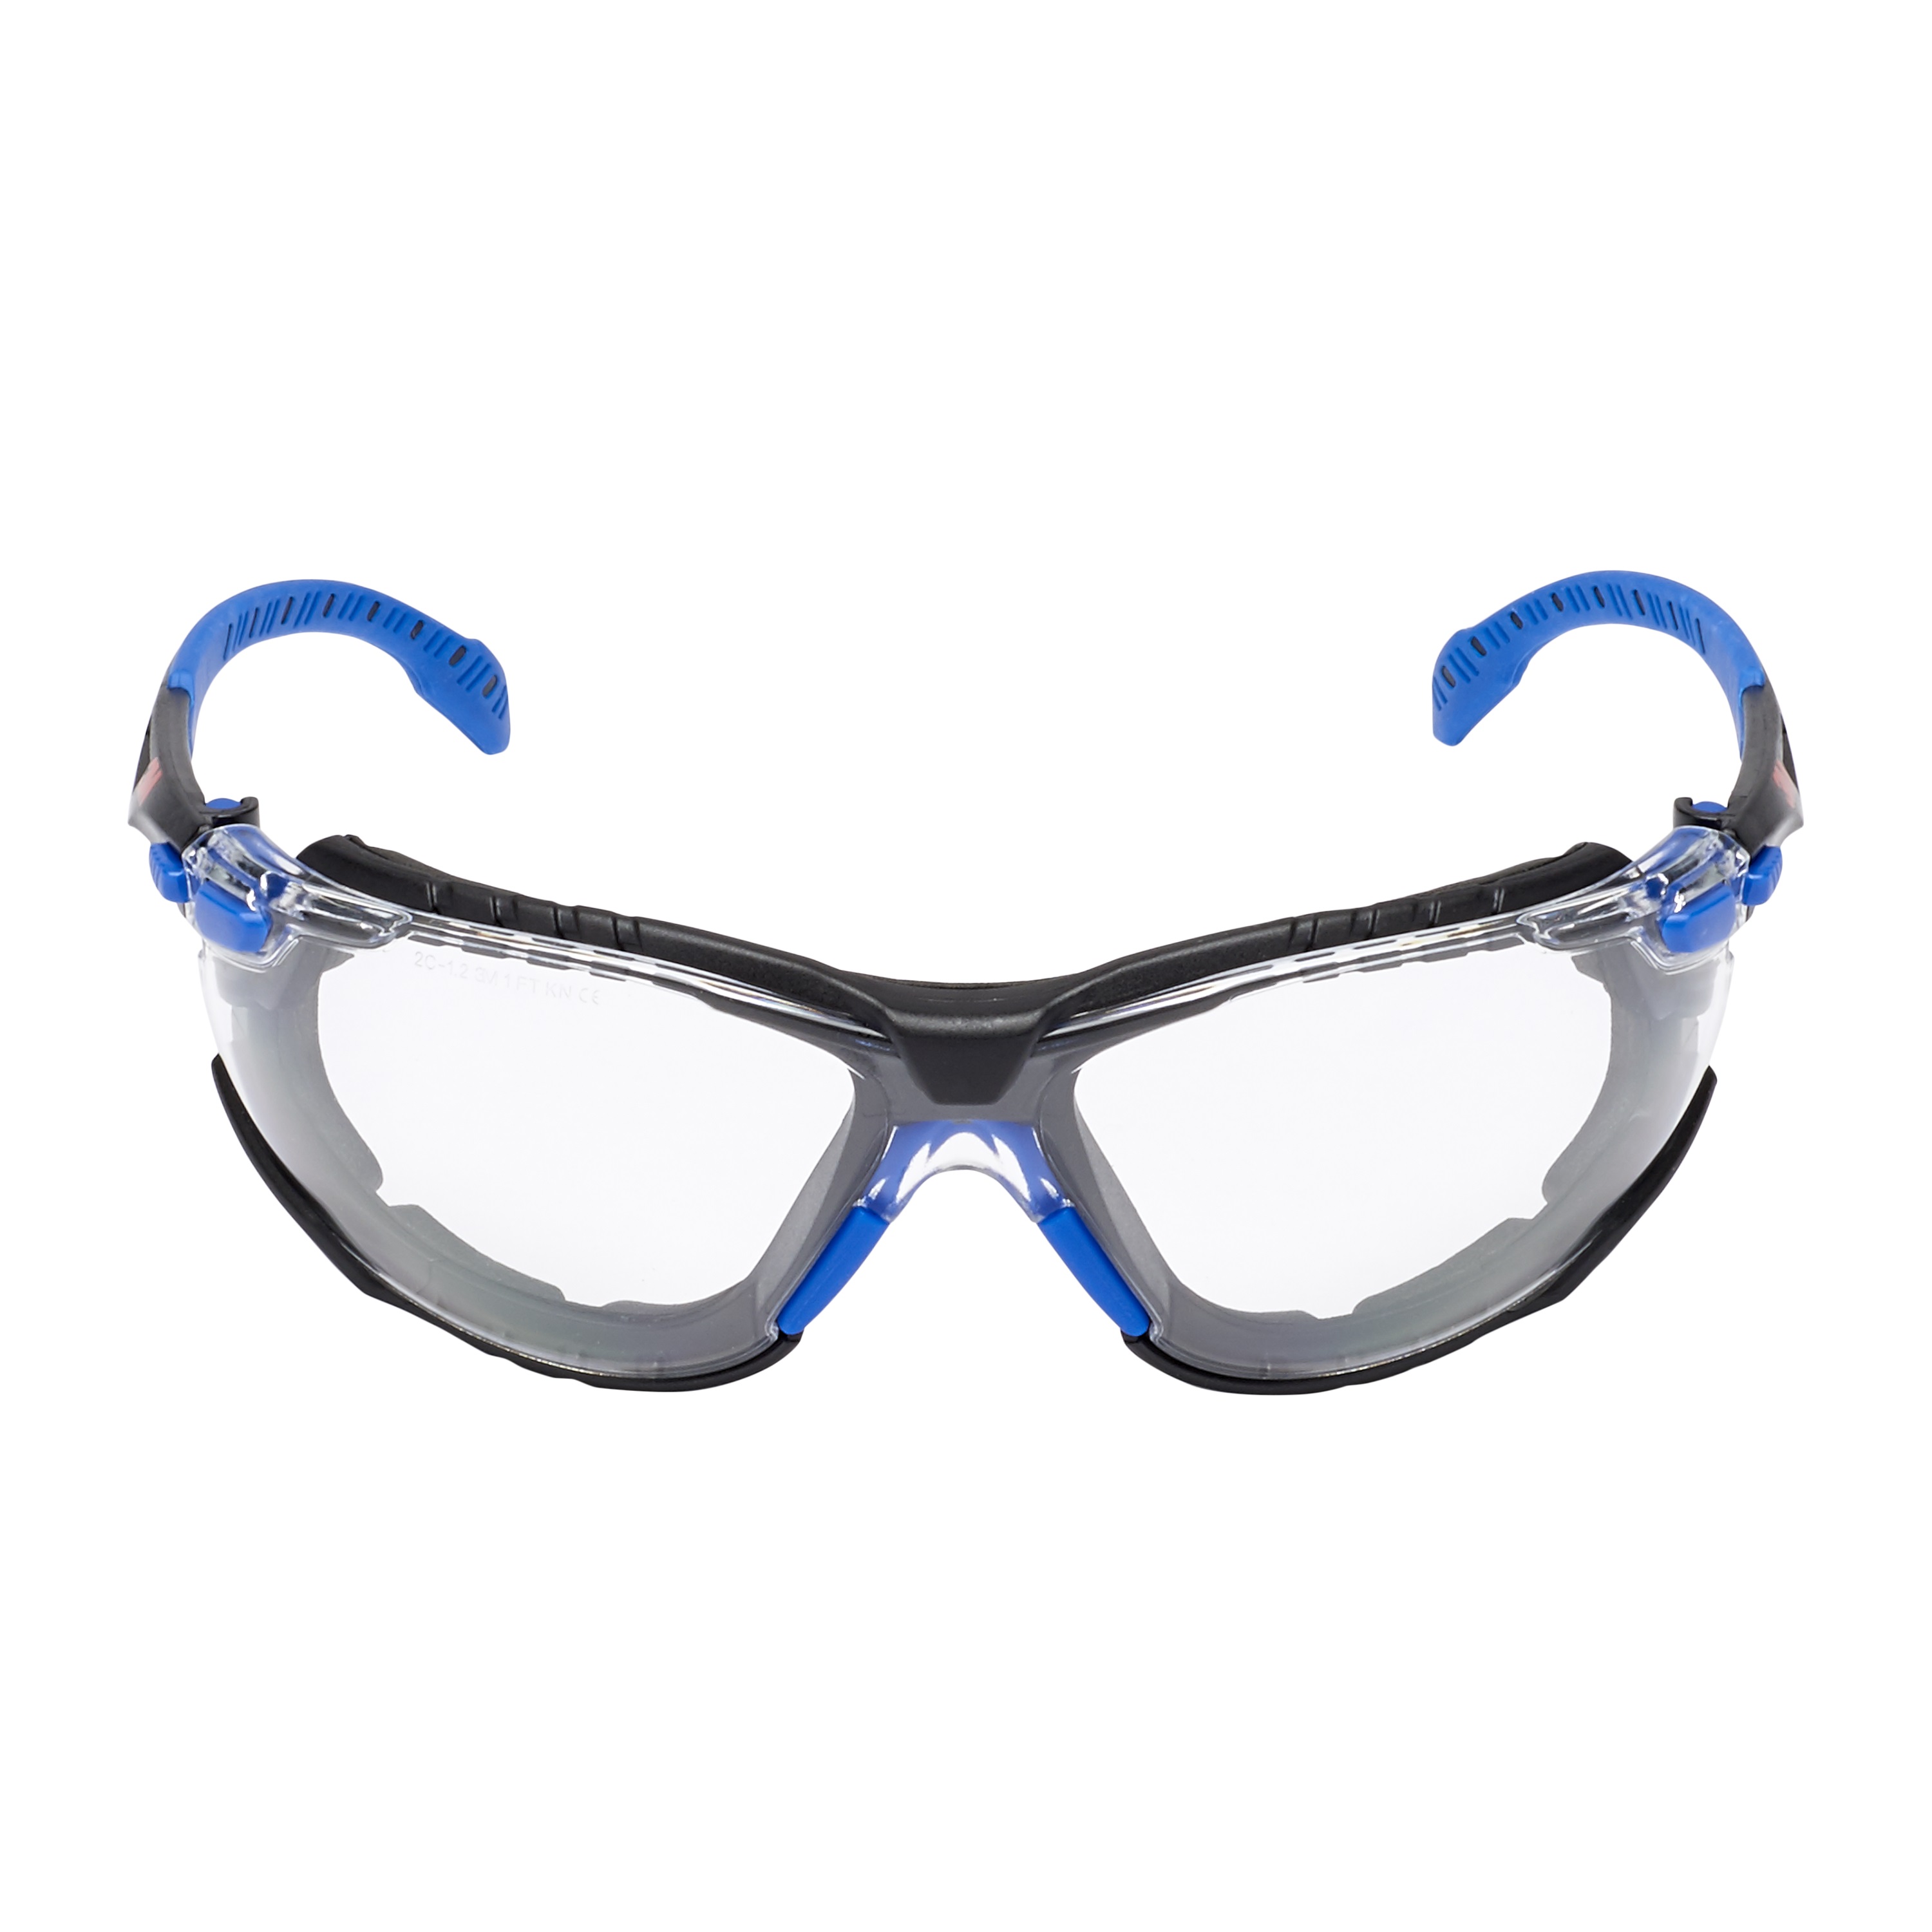 3M™ Solus™ 1000 Schutzbrille mit Antibeschlag-Beschichtung, blau/schwarz, transparent mit Tasche S1CB